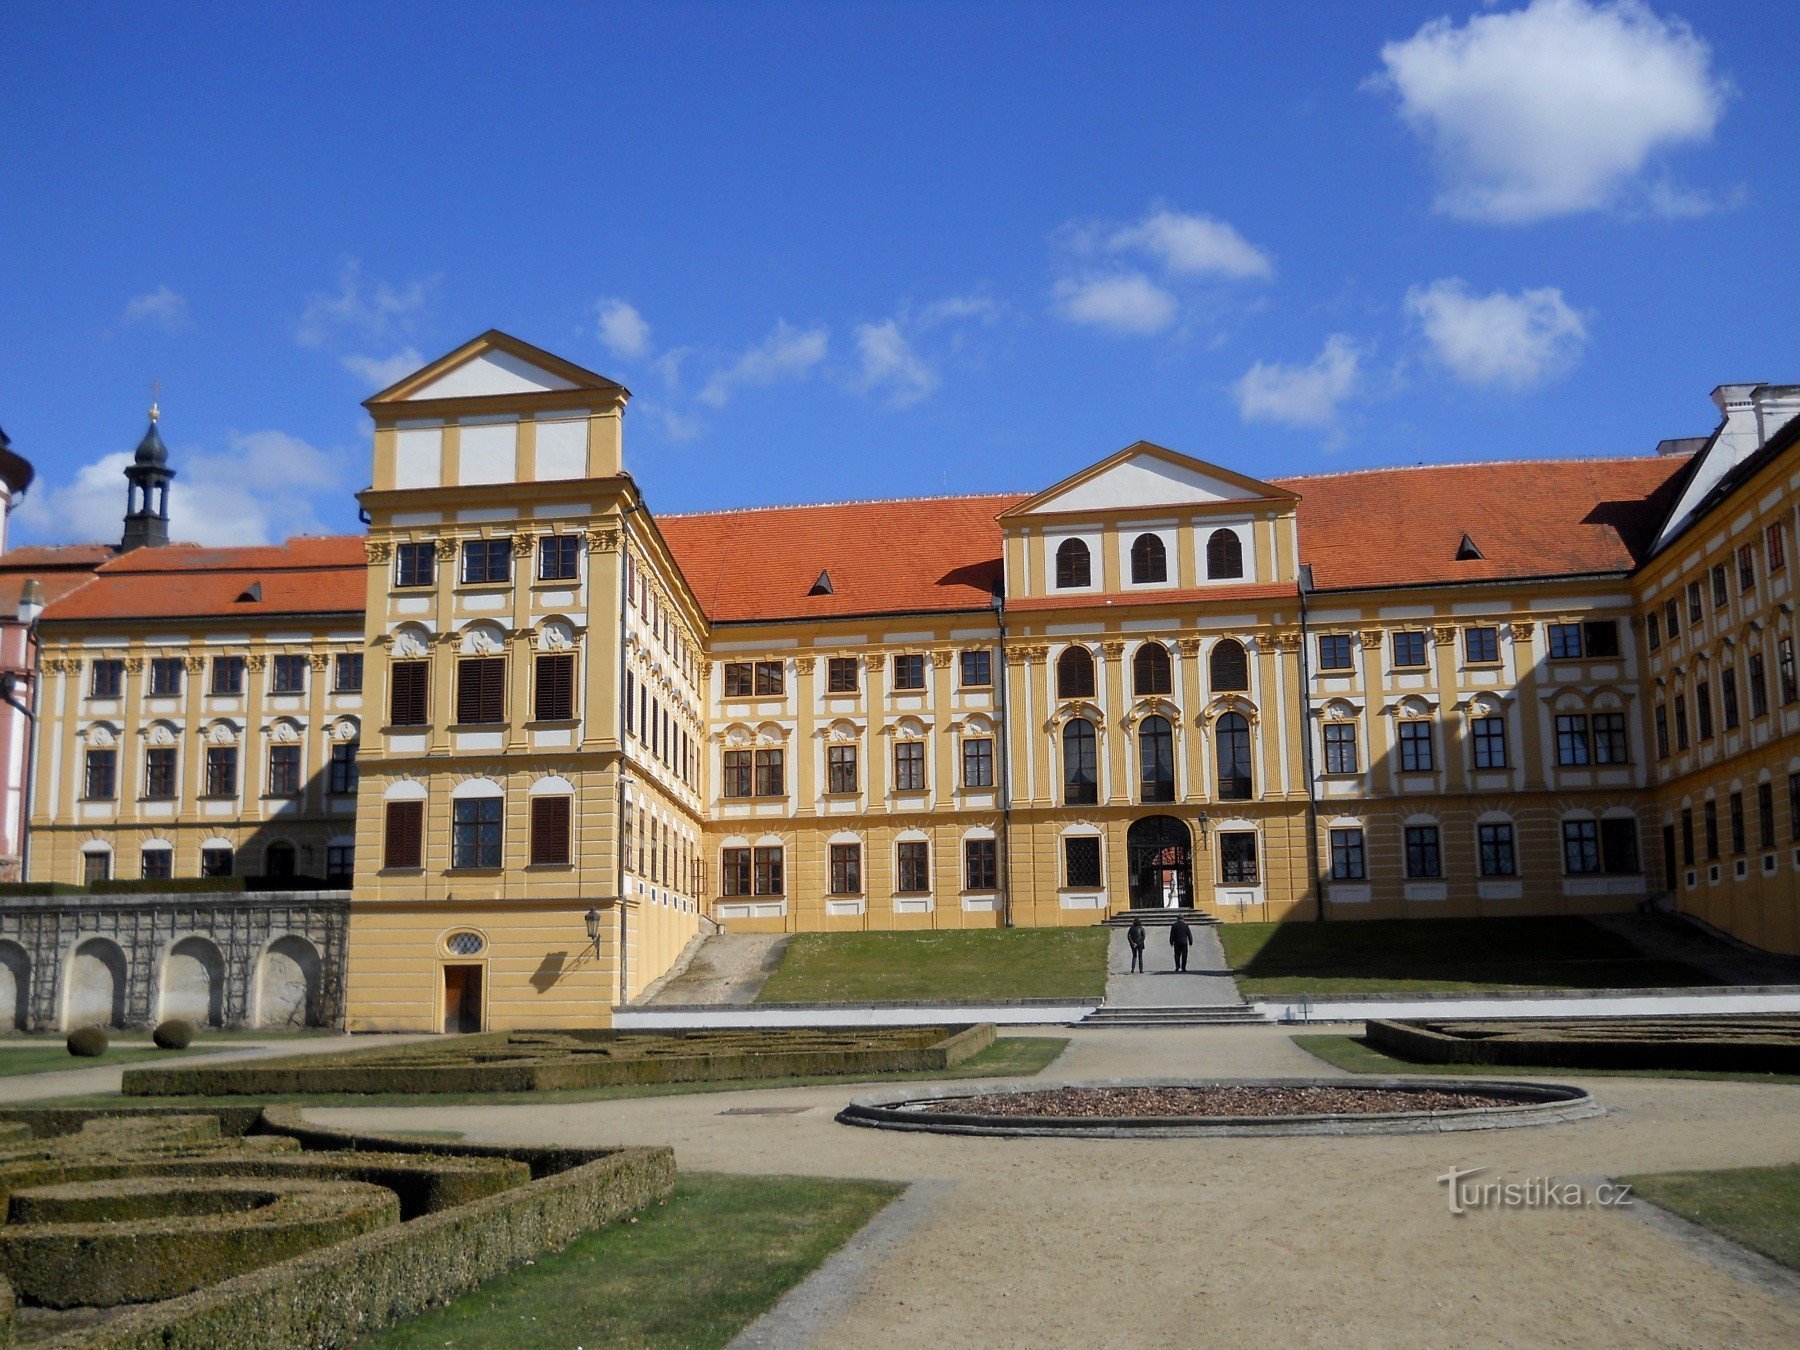 Jaroměřice nad Rokytnou – a city full of monuments